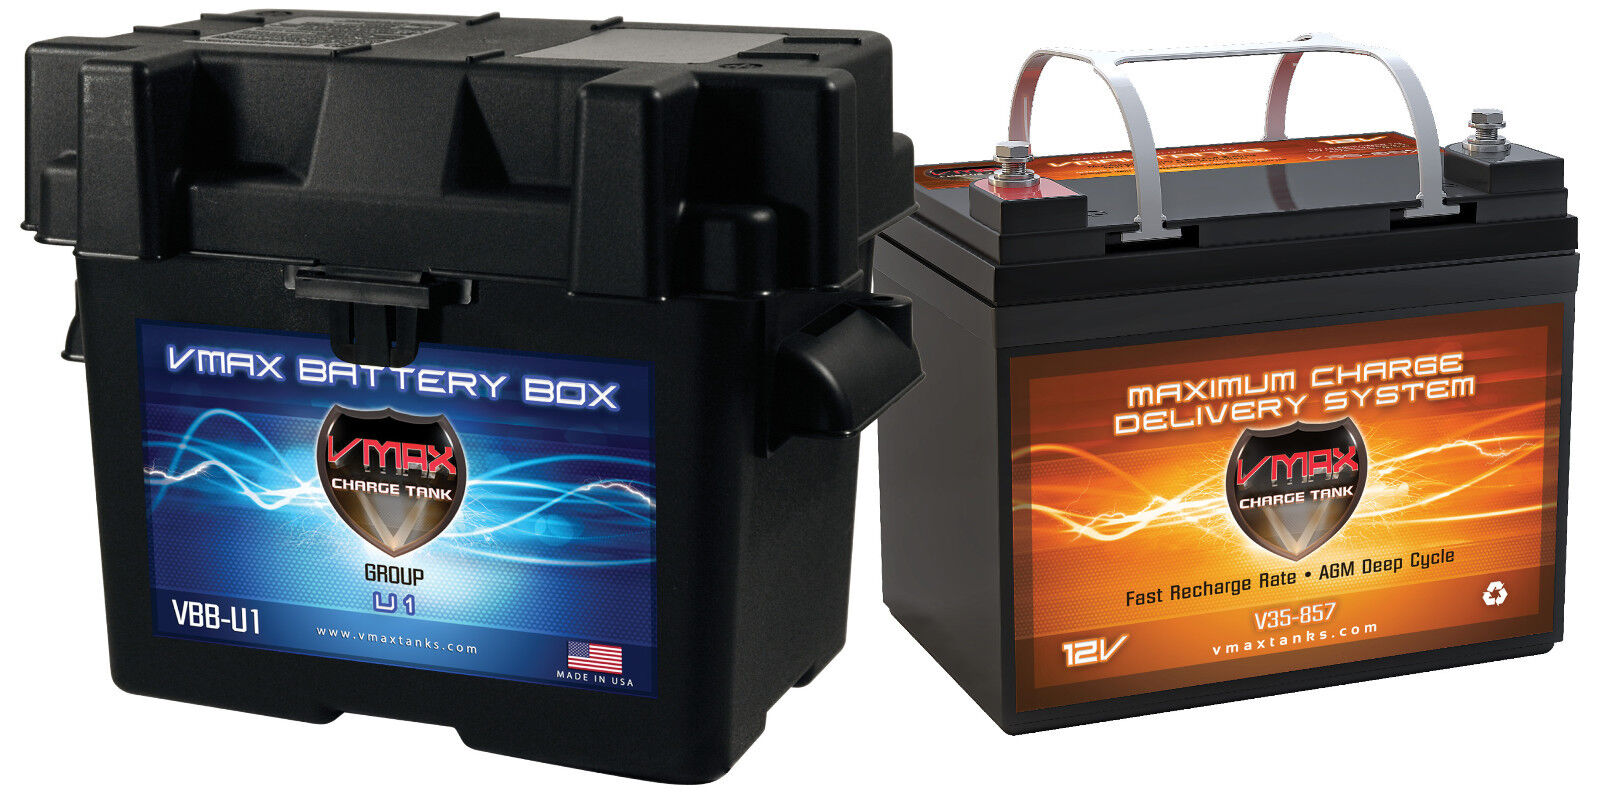 VMAX V35-857 +U1 BOX 35A AGM Battery for Boats & 18-35lb Sevylor Trolling Motors